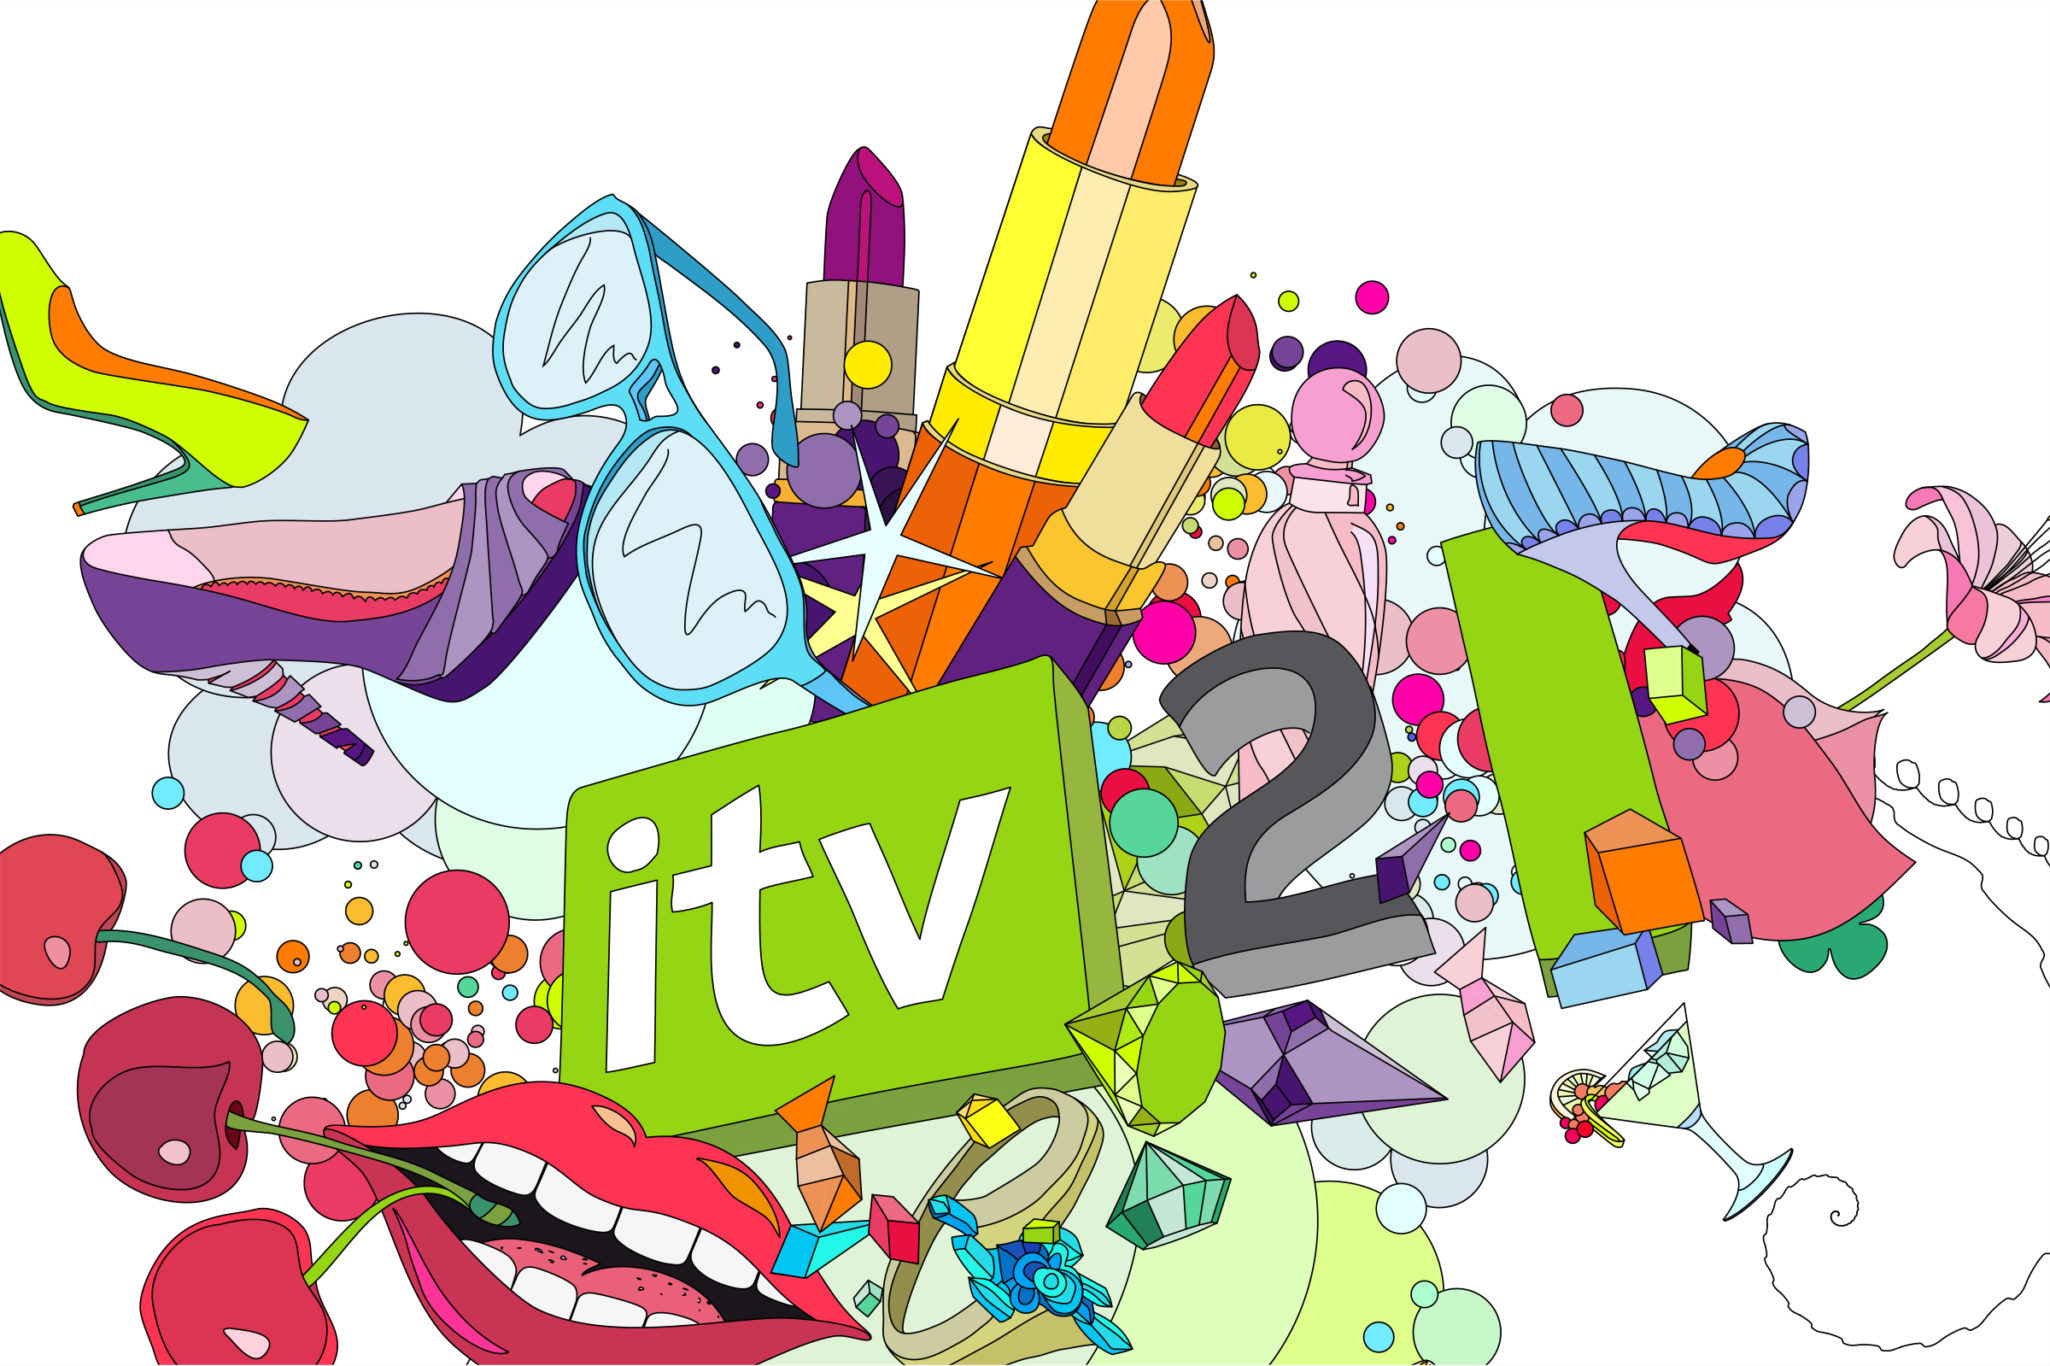 Glitter Litter:Vector illustration for ITV 2